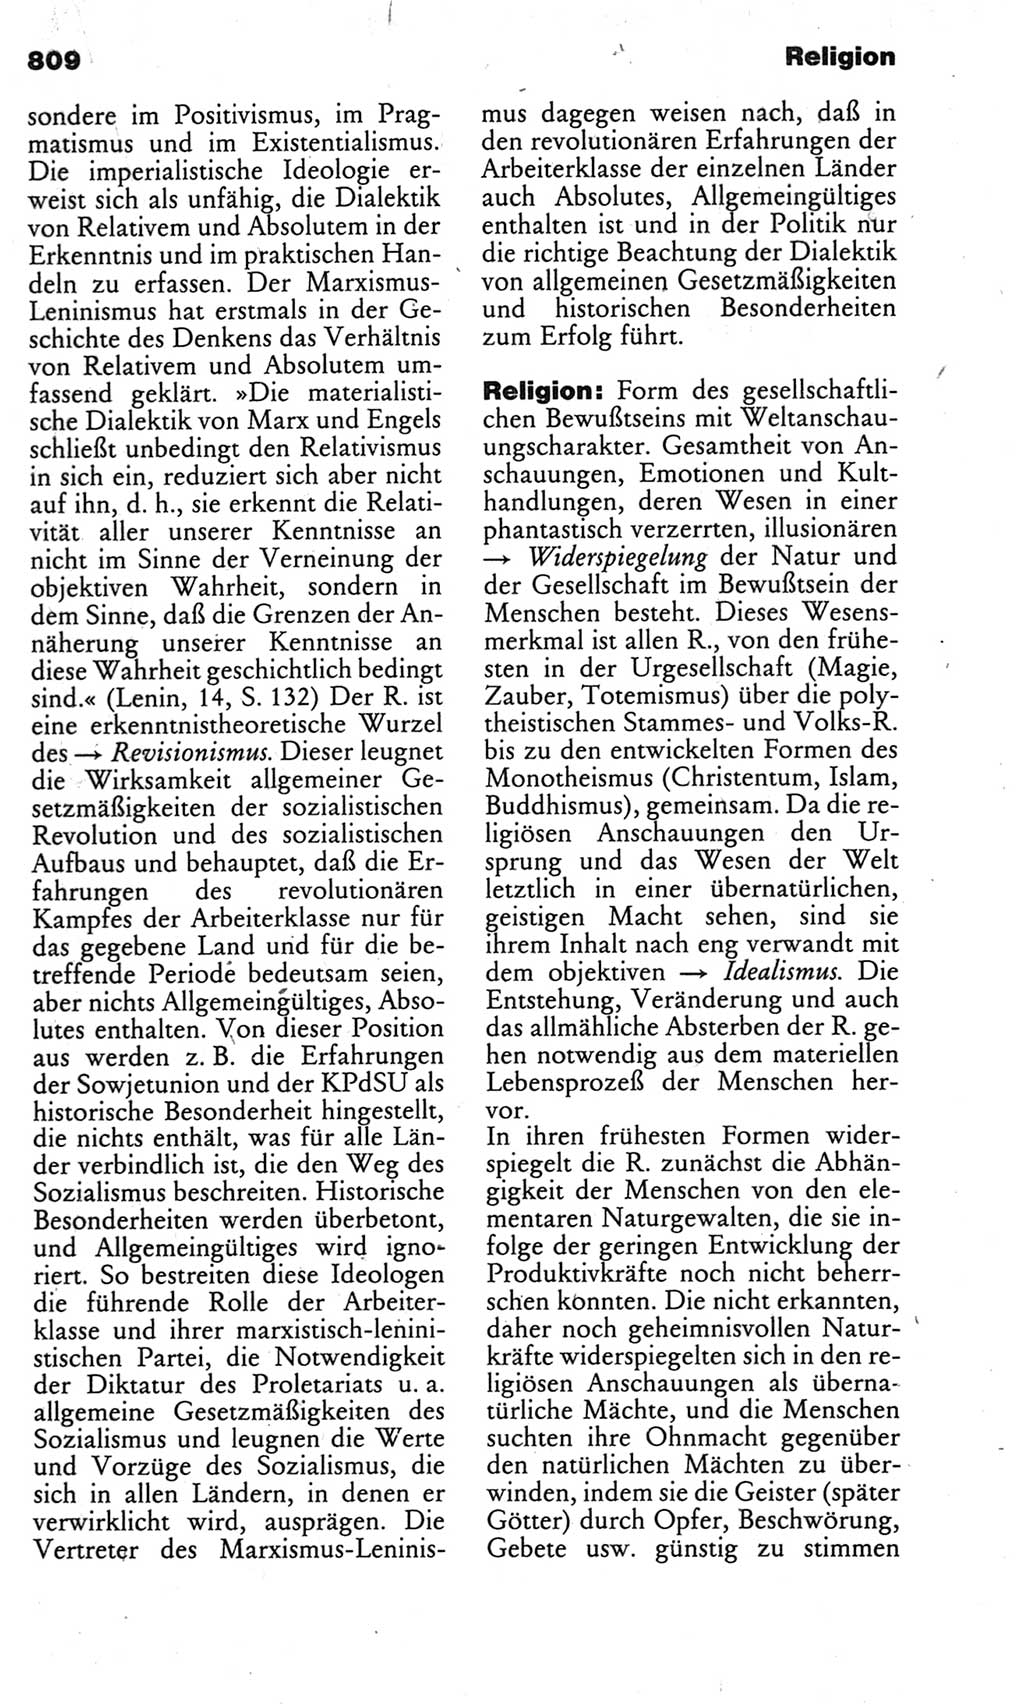 Kleines politisches Wörterbuch [Deutsche Demokratische Republik (DDR)] 1983, Seite 809 (Kl. pol. Wb. DDR 1983, S. 809)